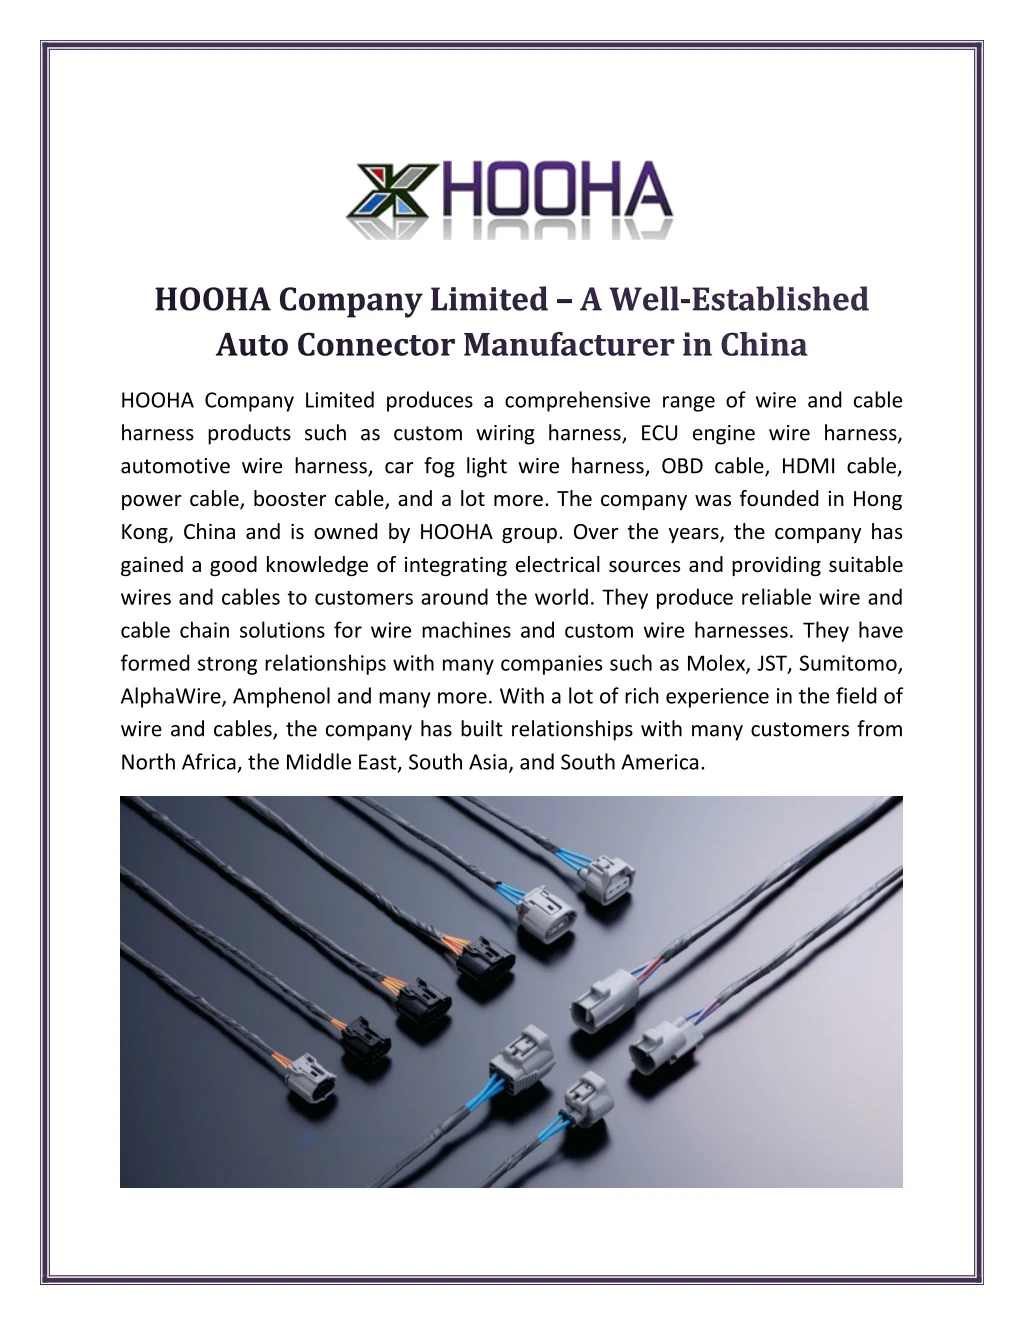 hooha company limited produces a comprehensive